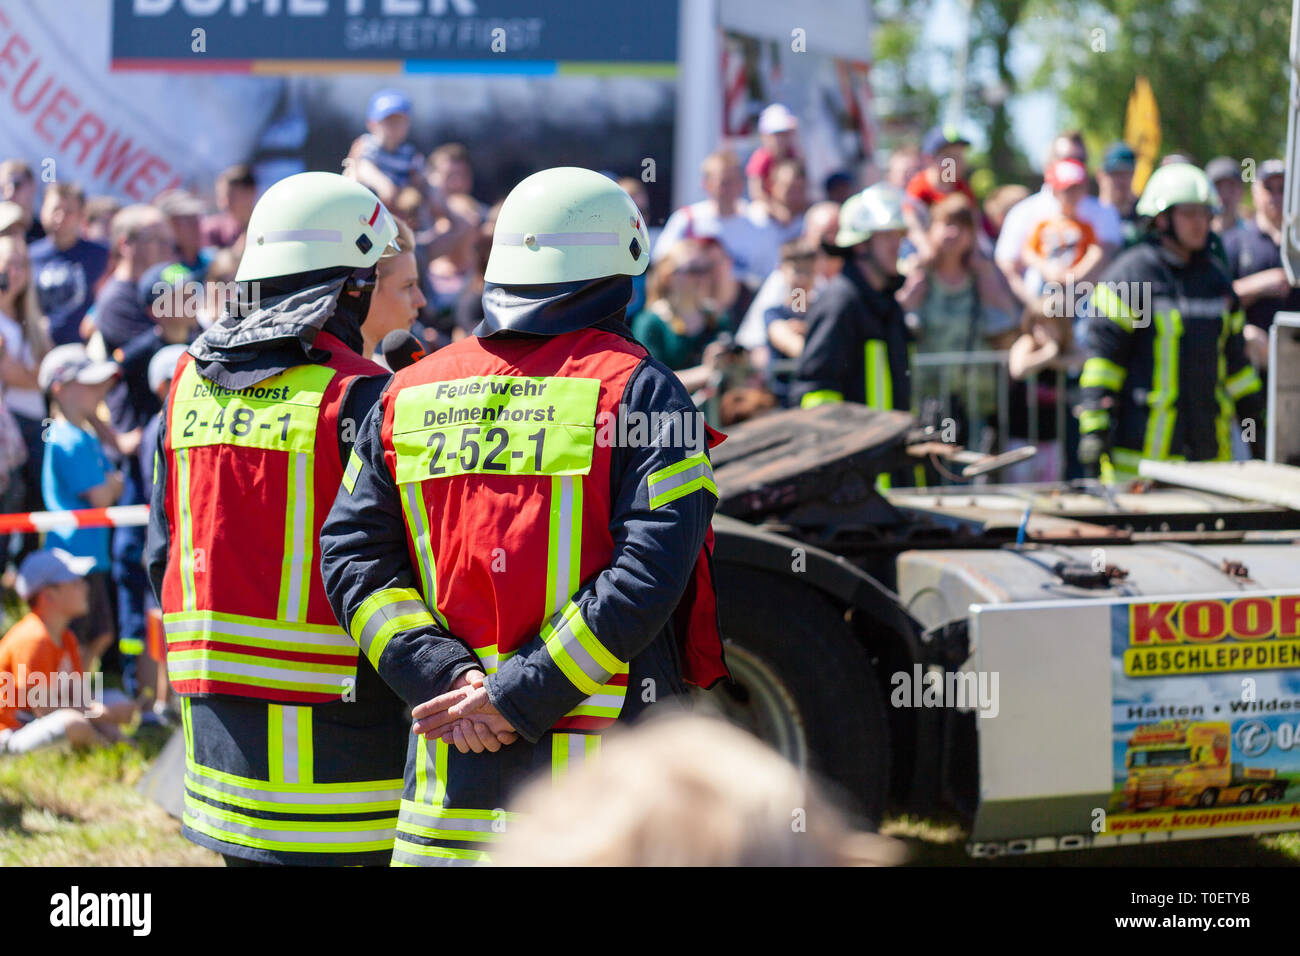 Hambourg / ALLEMAGNE - Mai 6, 2018 : les pompiers allemands s'entraînent sur un camion accident survenu à une journée portes ouvertes. Feuerwehr pompiers allemand moyen. Banque D'Images